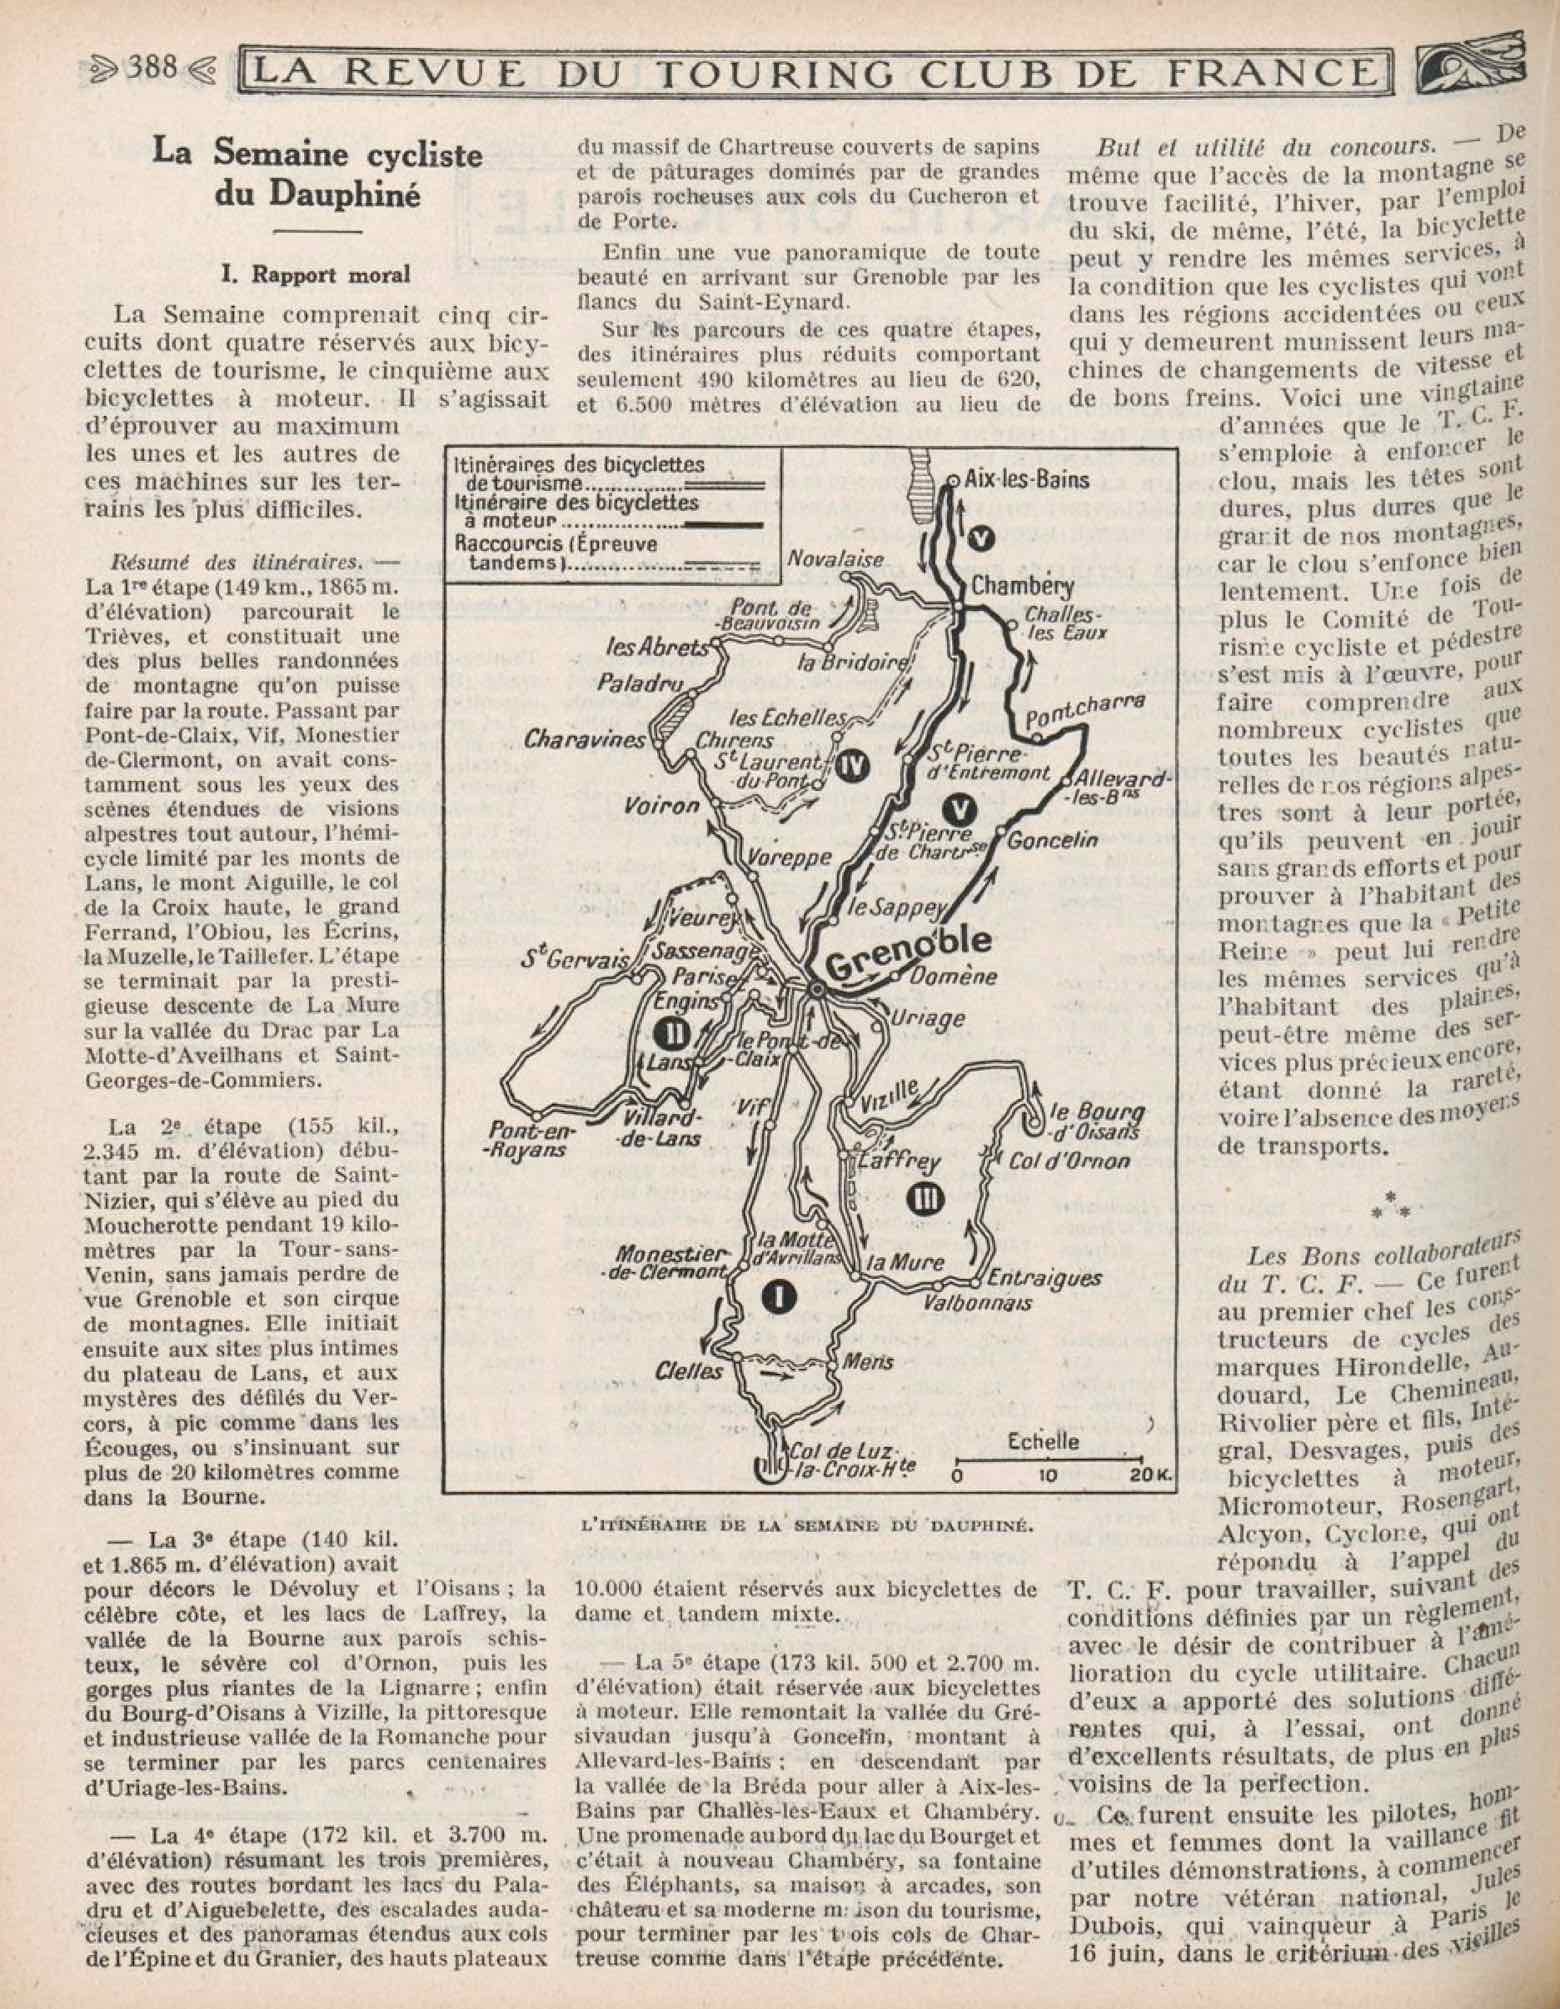 T.C.F. Revue Mensuelle August 1924 - La Semaine cycliste du Dauphine scan 1 main image